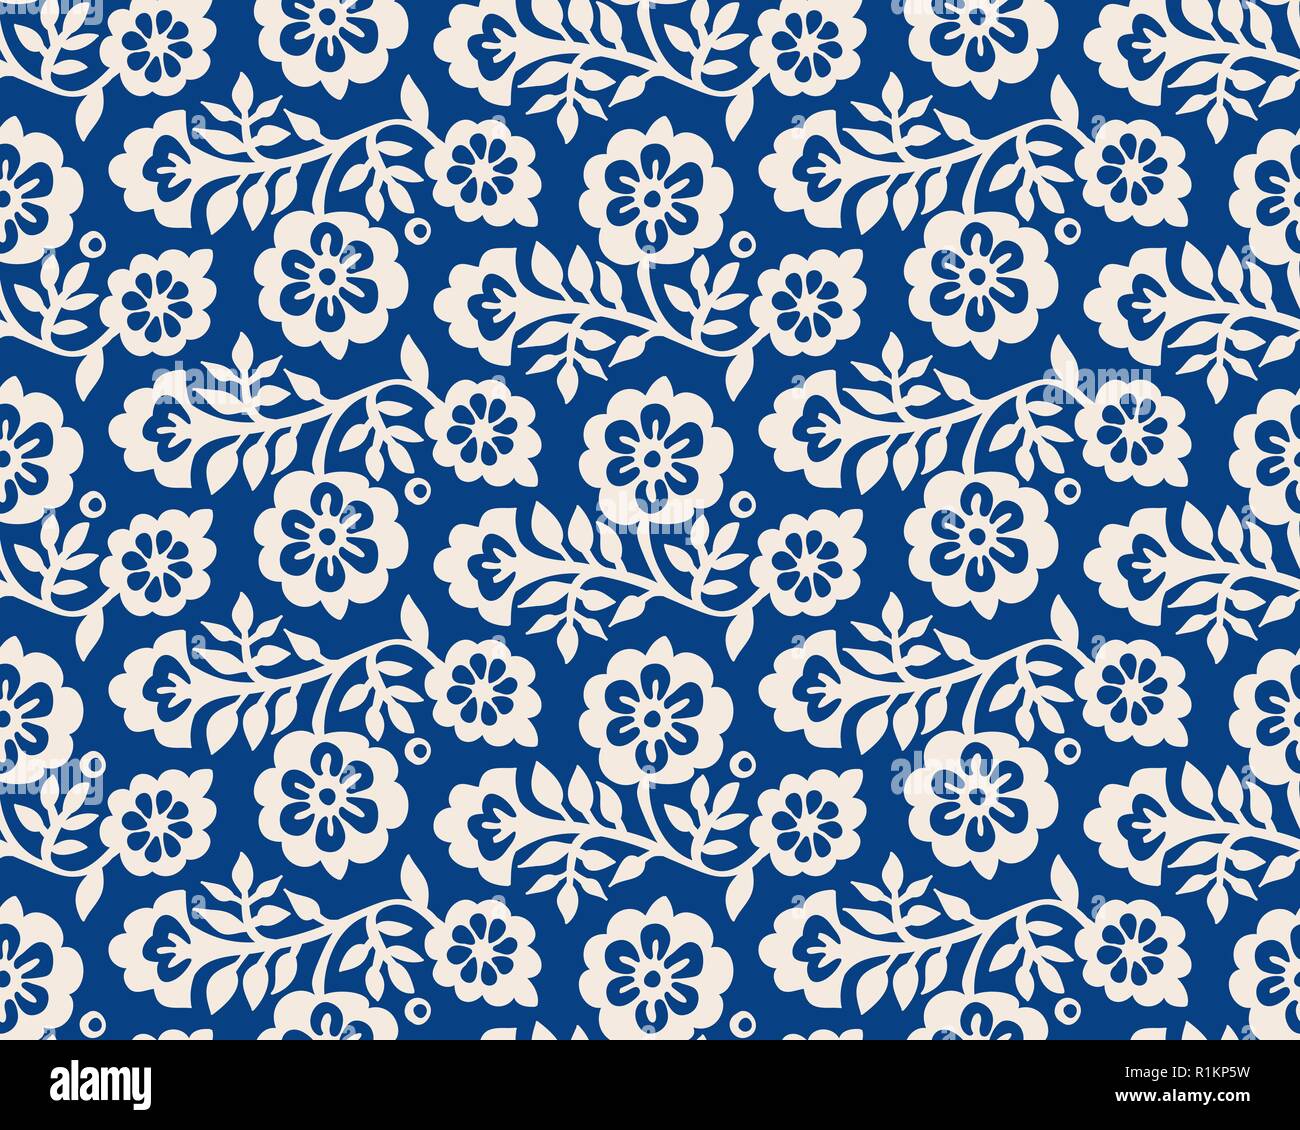 Seamless indigo woodblock stampato disegno floreale. Vettore ornamento etnico, tradizionale russo con motivo a fiori, ecru su sfondo blu scuro. Illustrazione Vettoriale